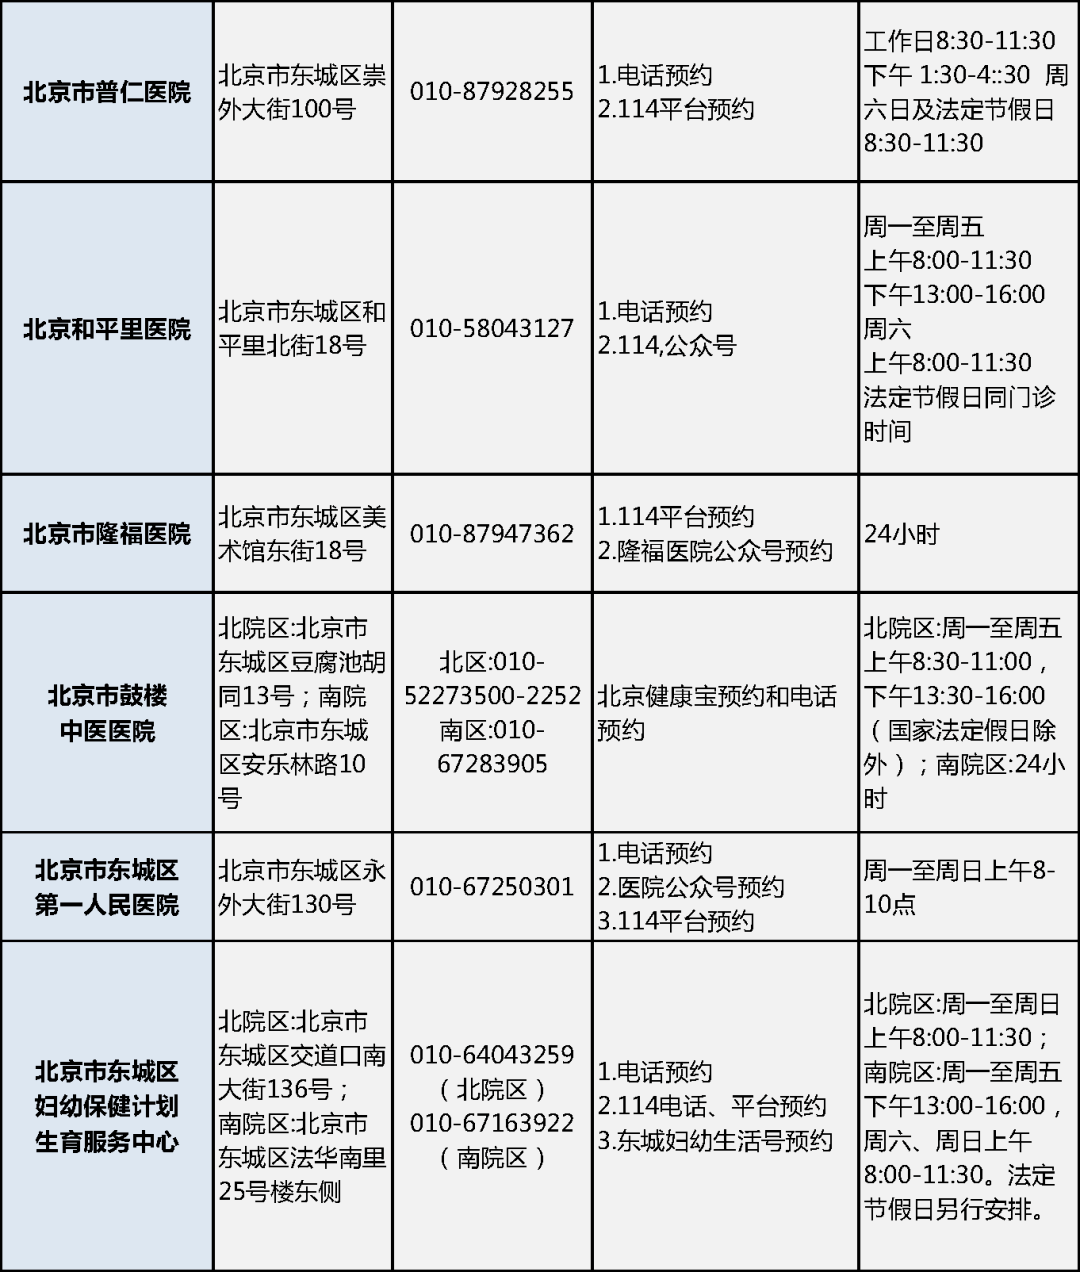 最全名单!一文查遍北京新冠病毒核酸采样点和24小时核酸检测机构